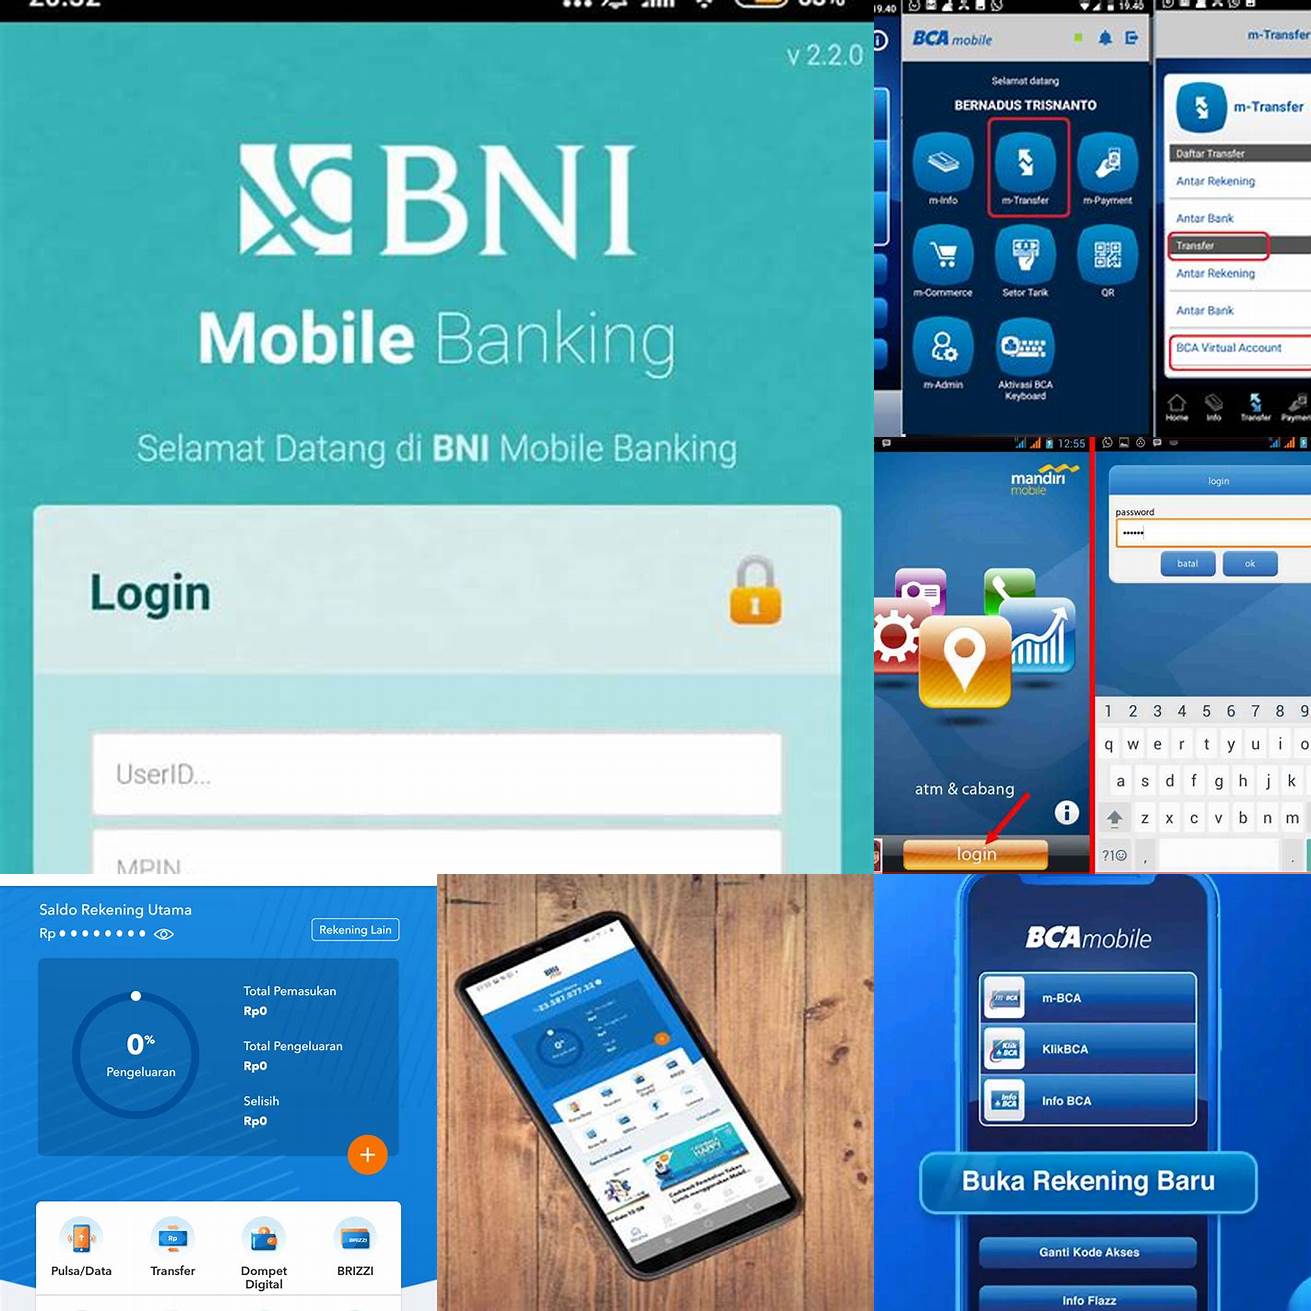 Login ke aplikasi mobile banking dengan menggunakan PIN yang telah dibuat